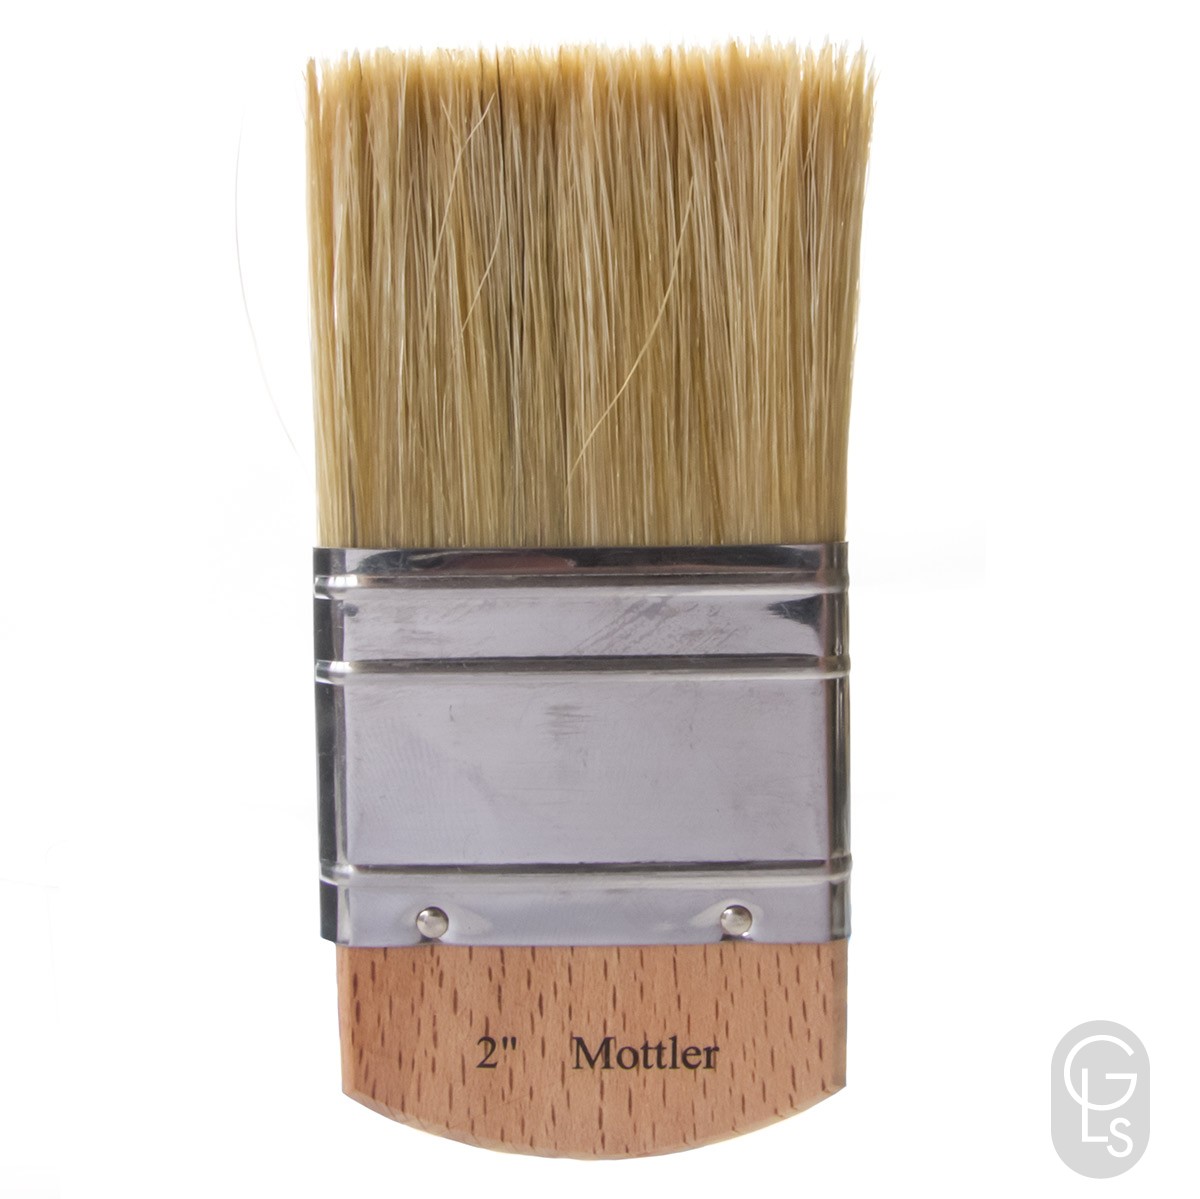 Mottler Graining brush 2 inch